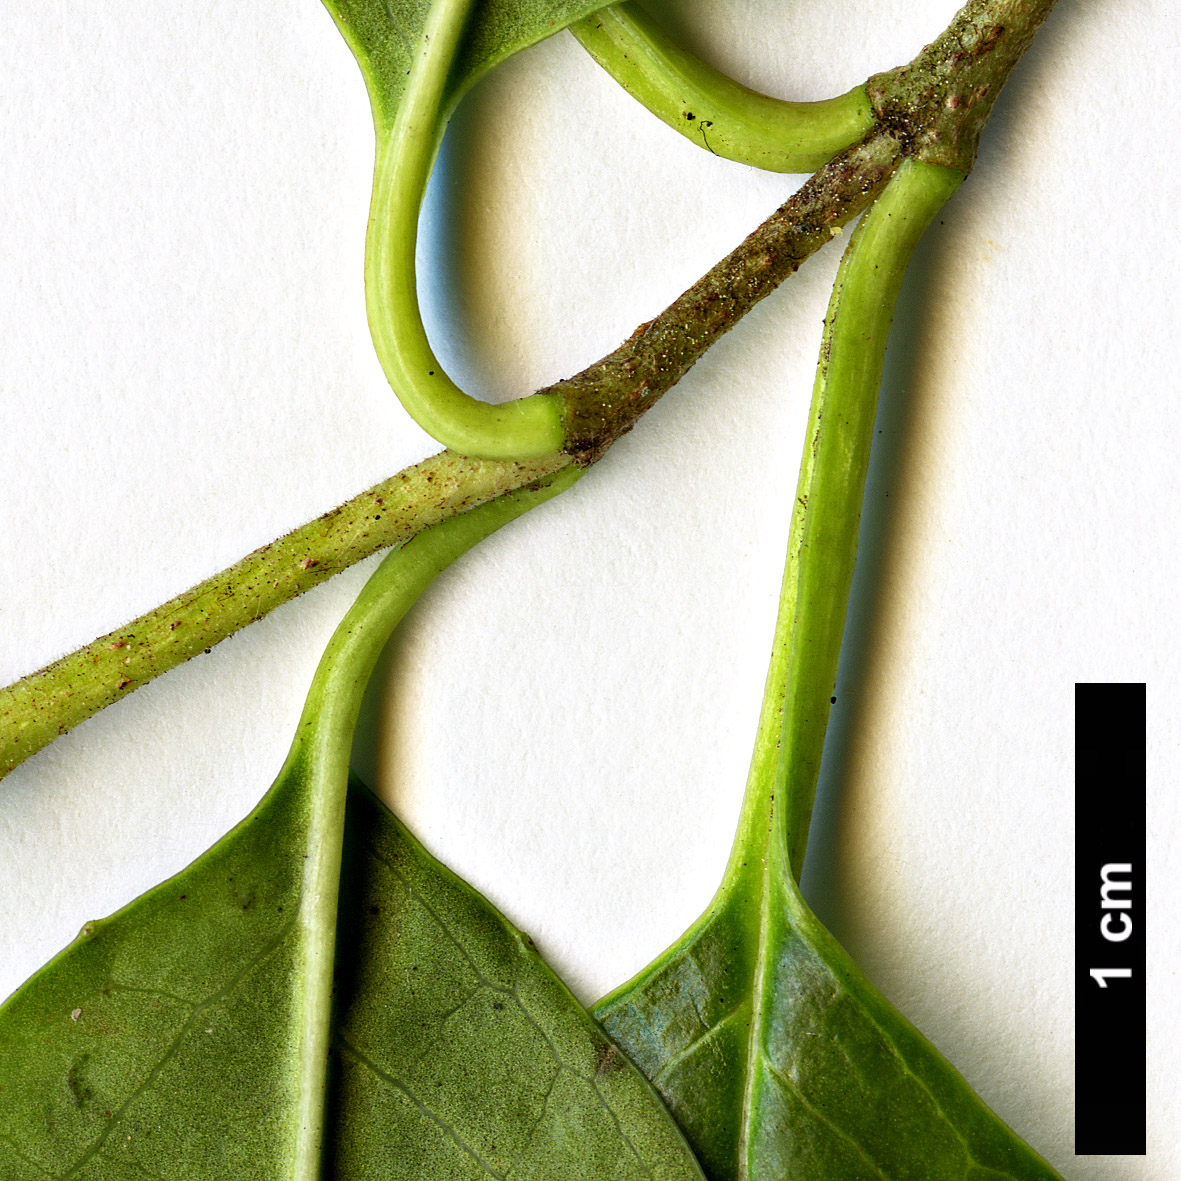 High resolution image: Family: Adoxaceae - Genus: Viburnum - Taxon: atrocyaneum